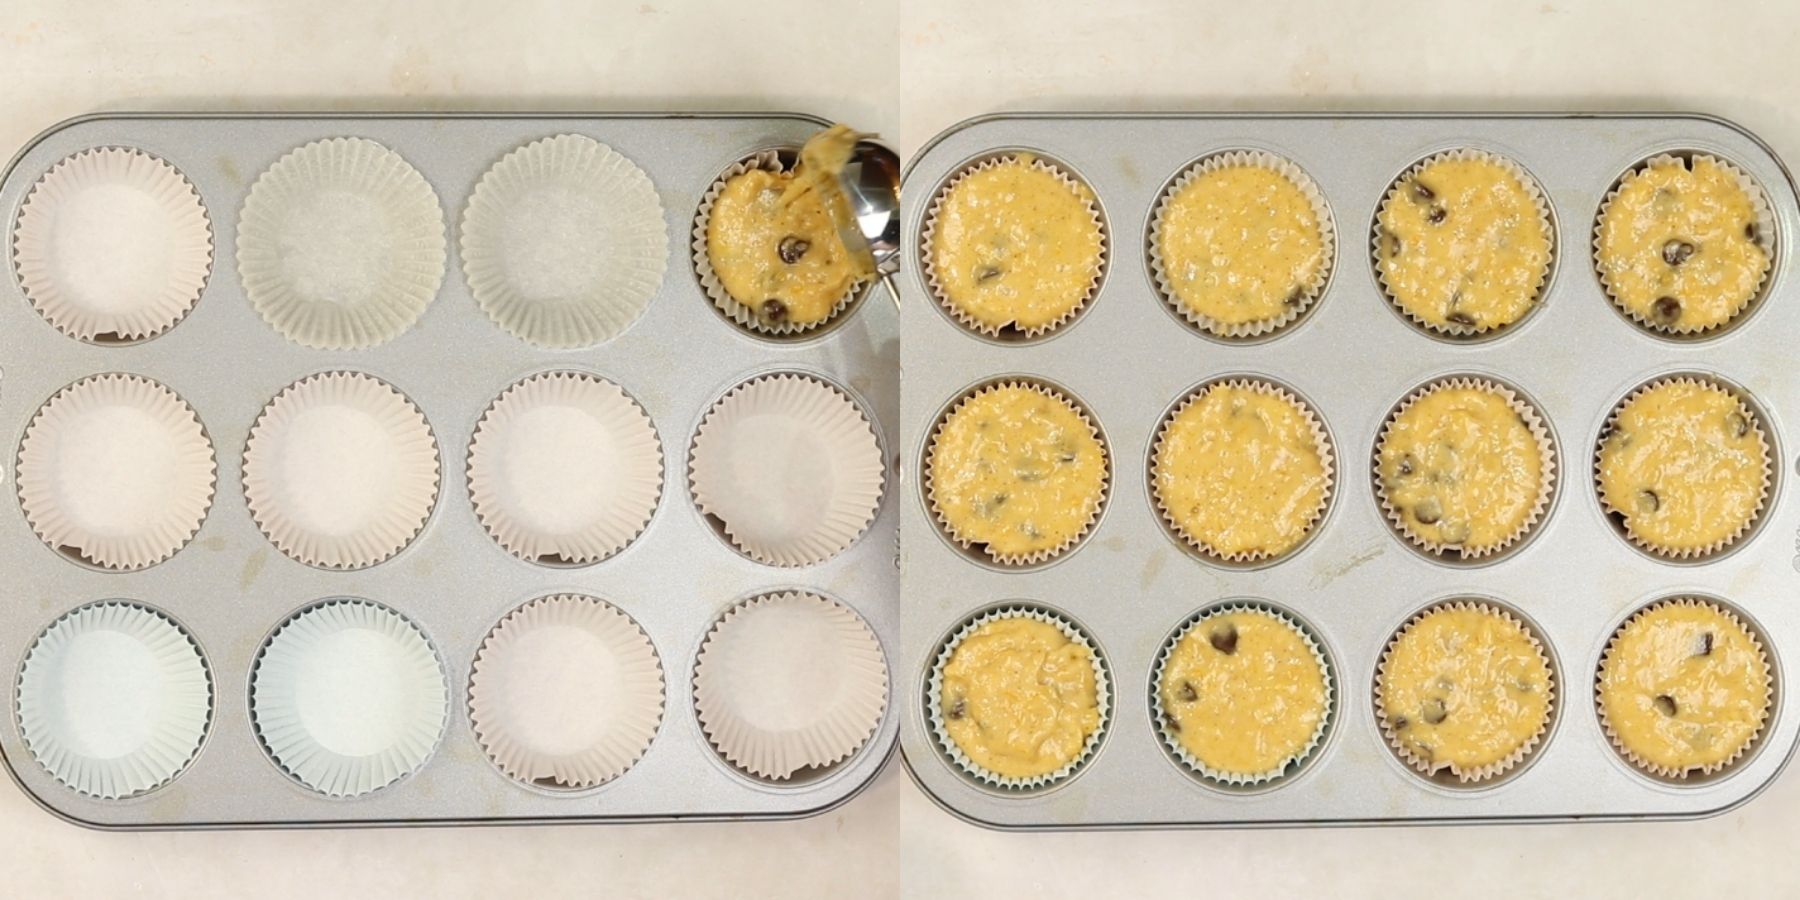 Muffins process shots.